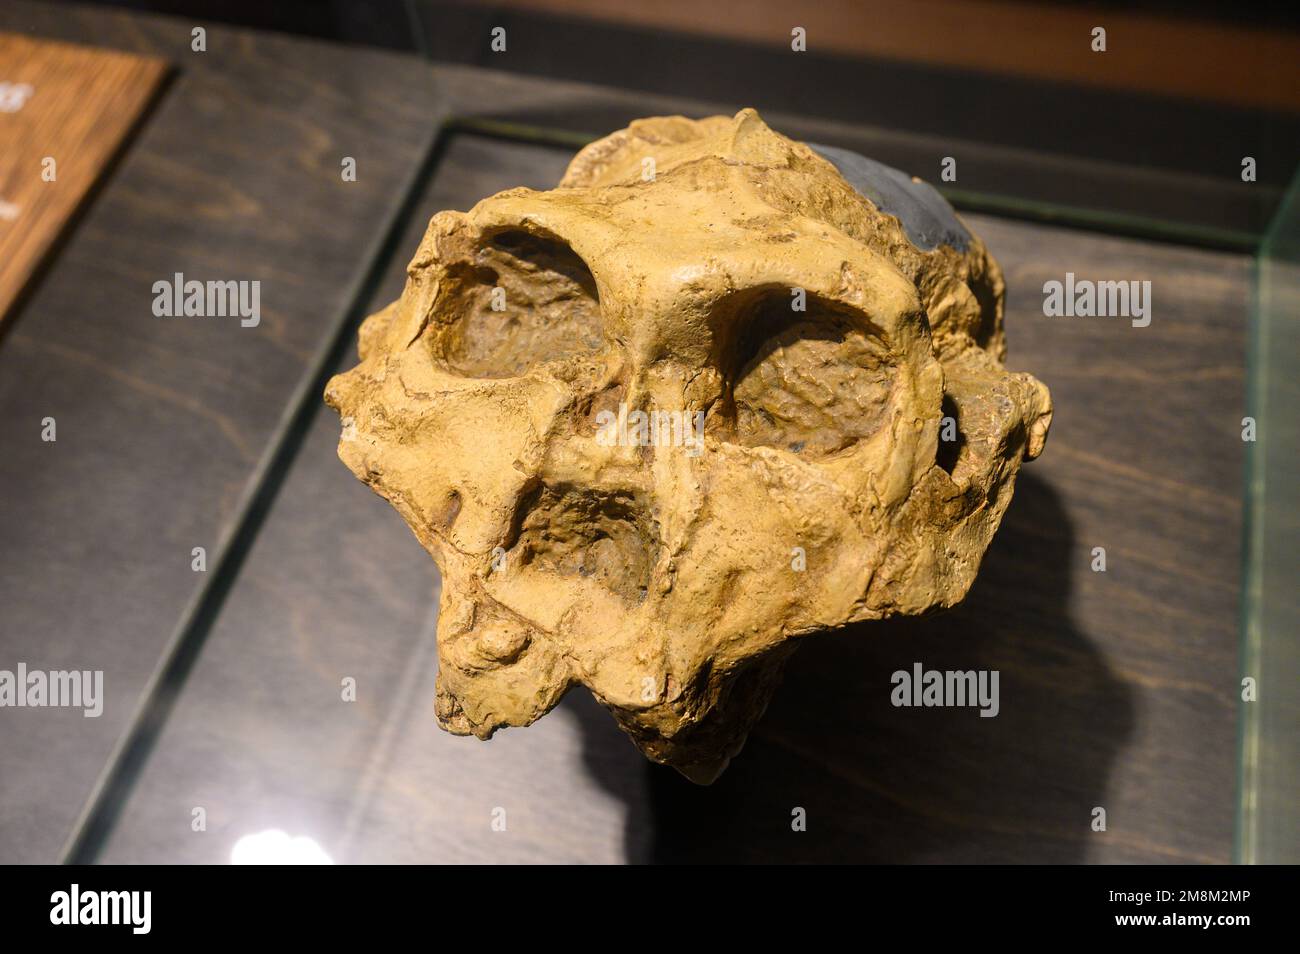 Resistenza al Paranthropus. Cranio (fuso). Trovato in Swartkrans Cave, Sud Africa. In mostra al Museo di Scienze naturali di Bruxelles, Belgio. Foto Stock